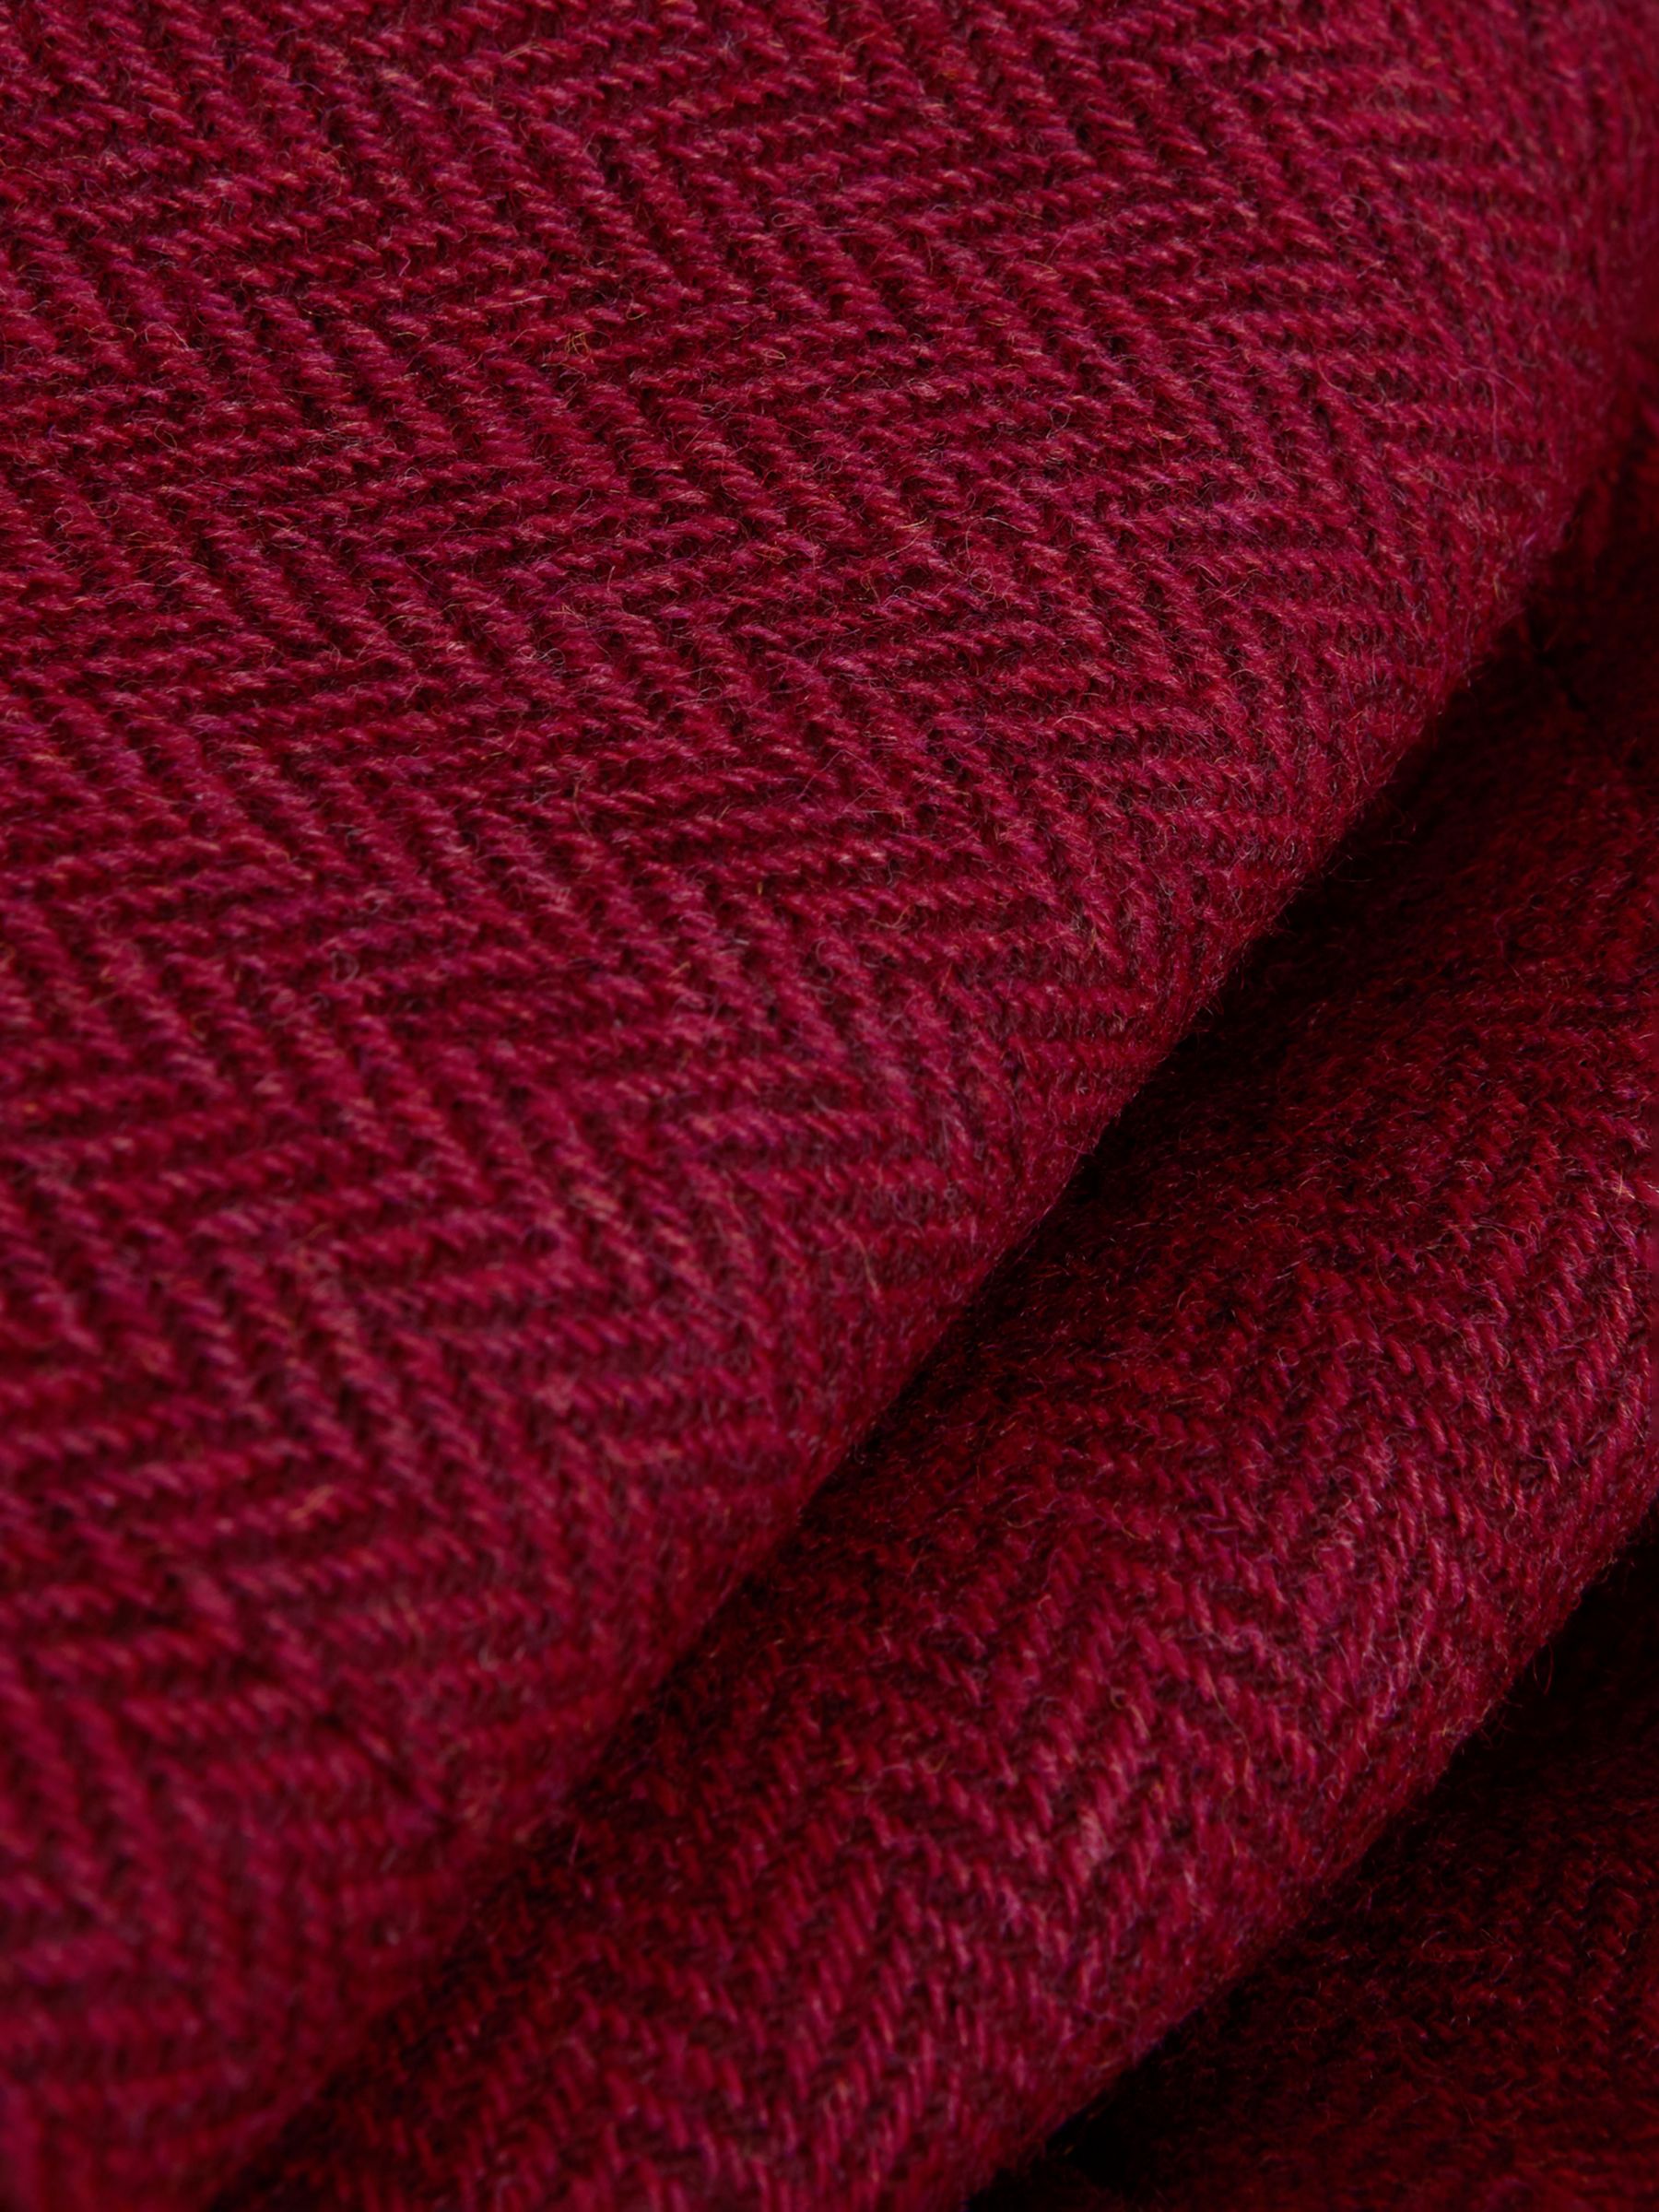 Hobbs Daneilla Herringbone Wool Tweed Jacket, Pink/Multi, 10